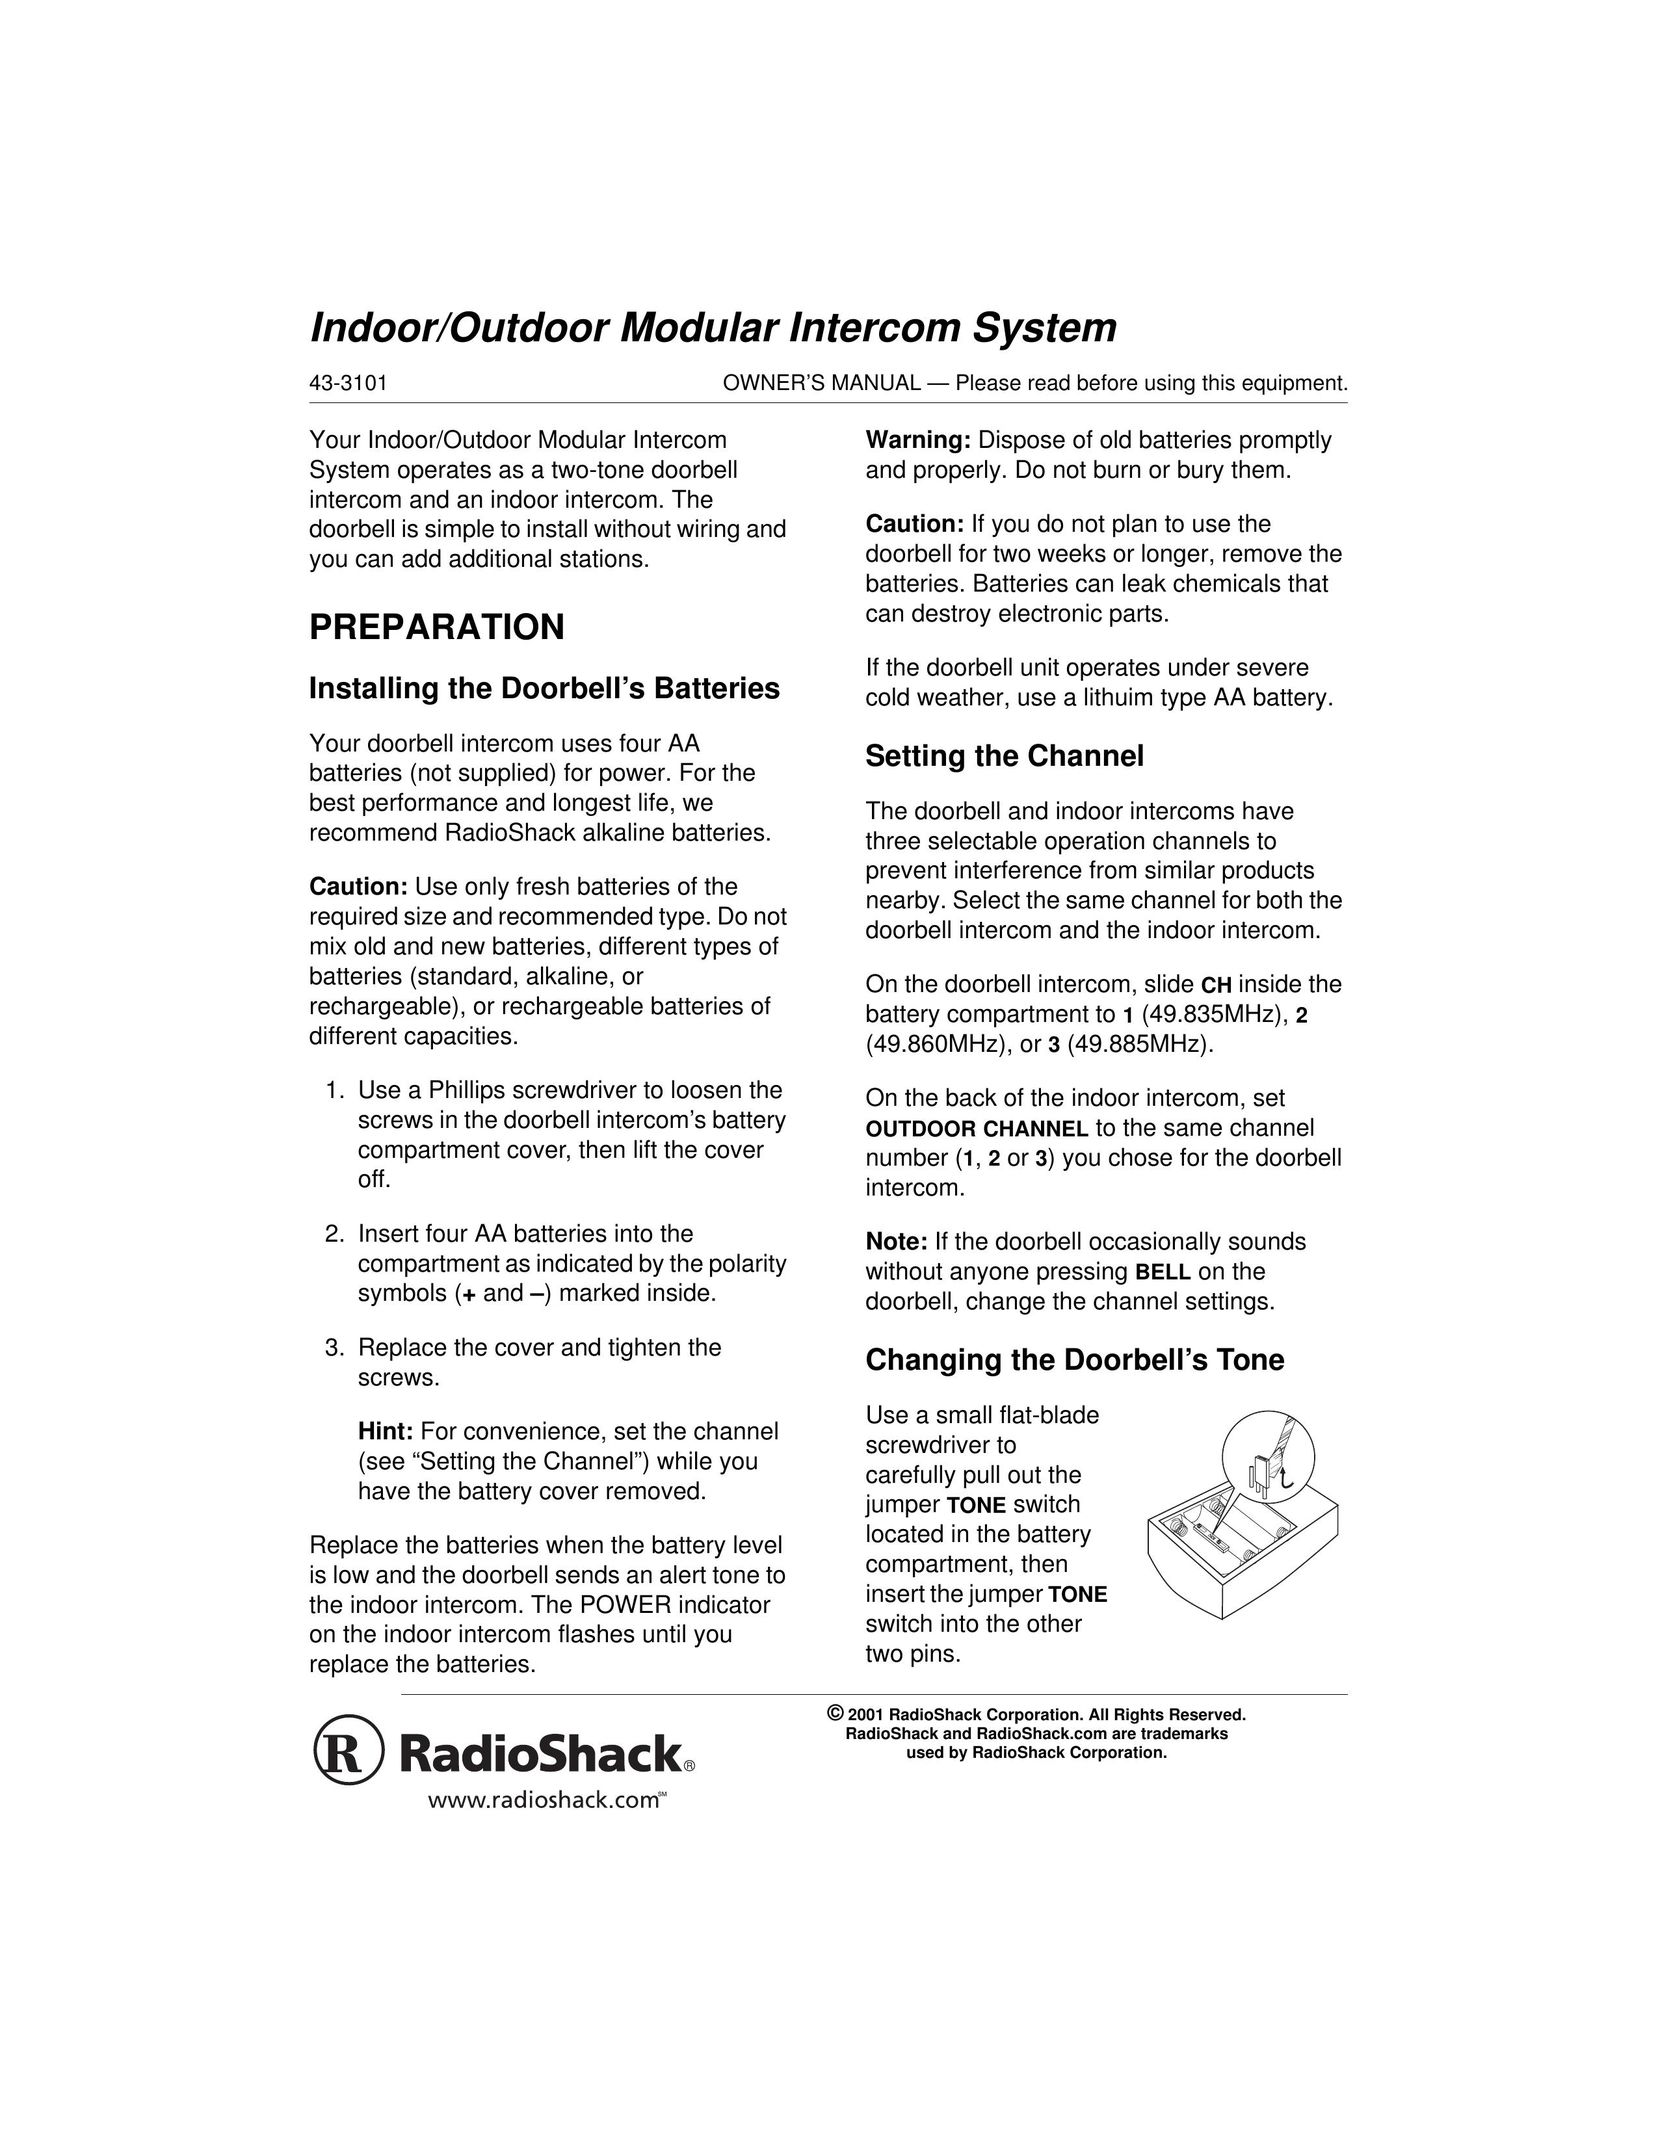 Radio Shack 43-3101 Intercom System User Manual